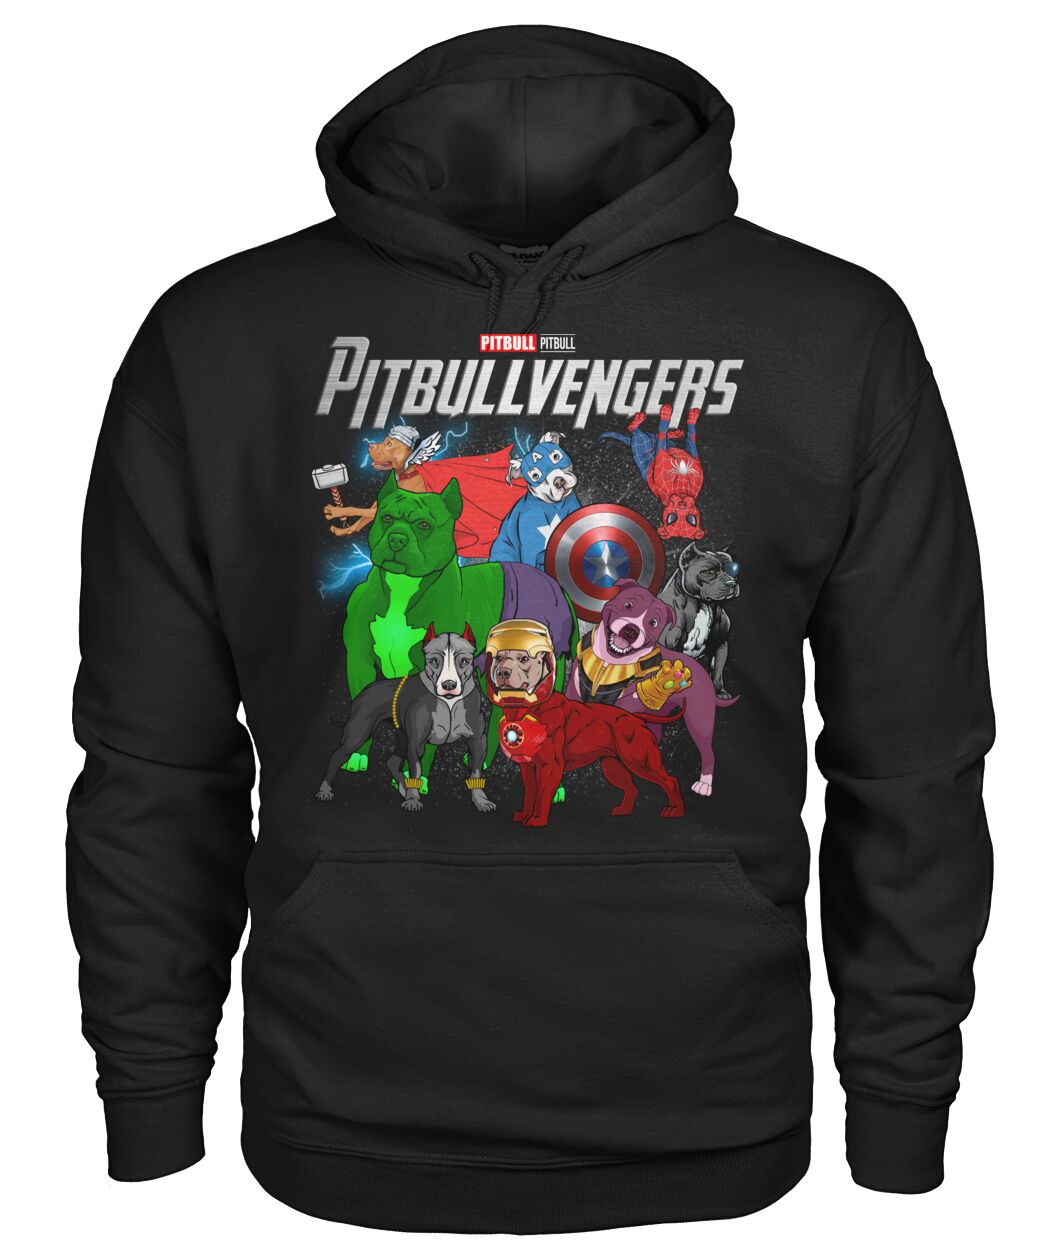 Pitbullvengers 3D Hoodie, Shirt 8